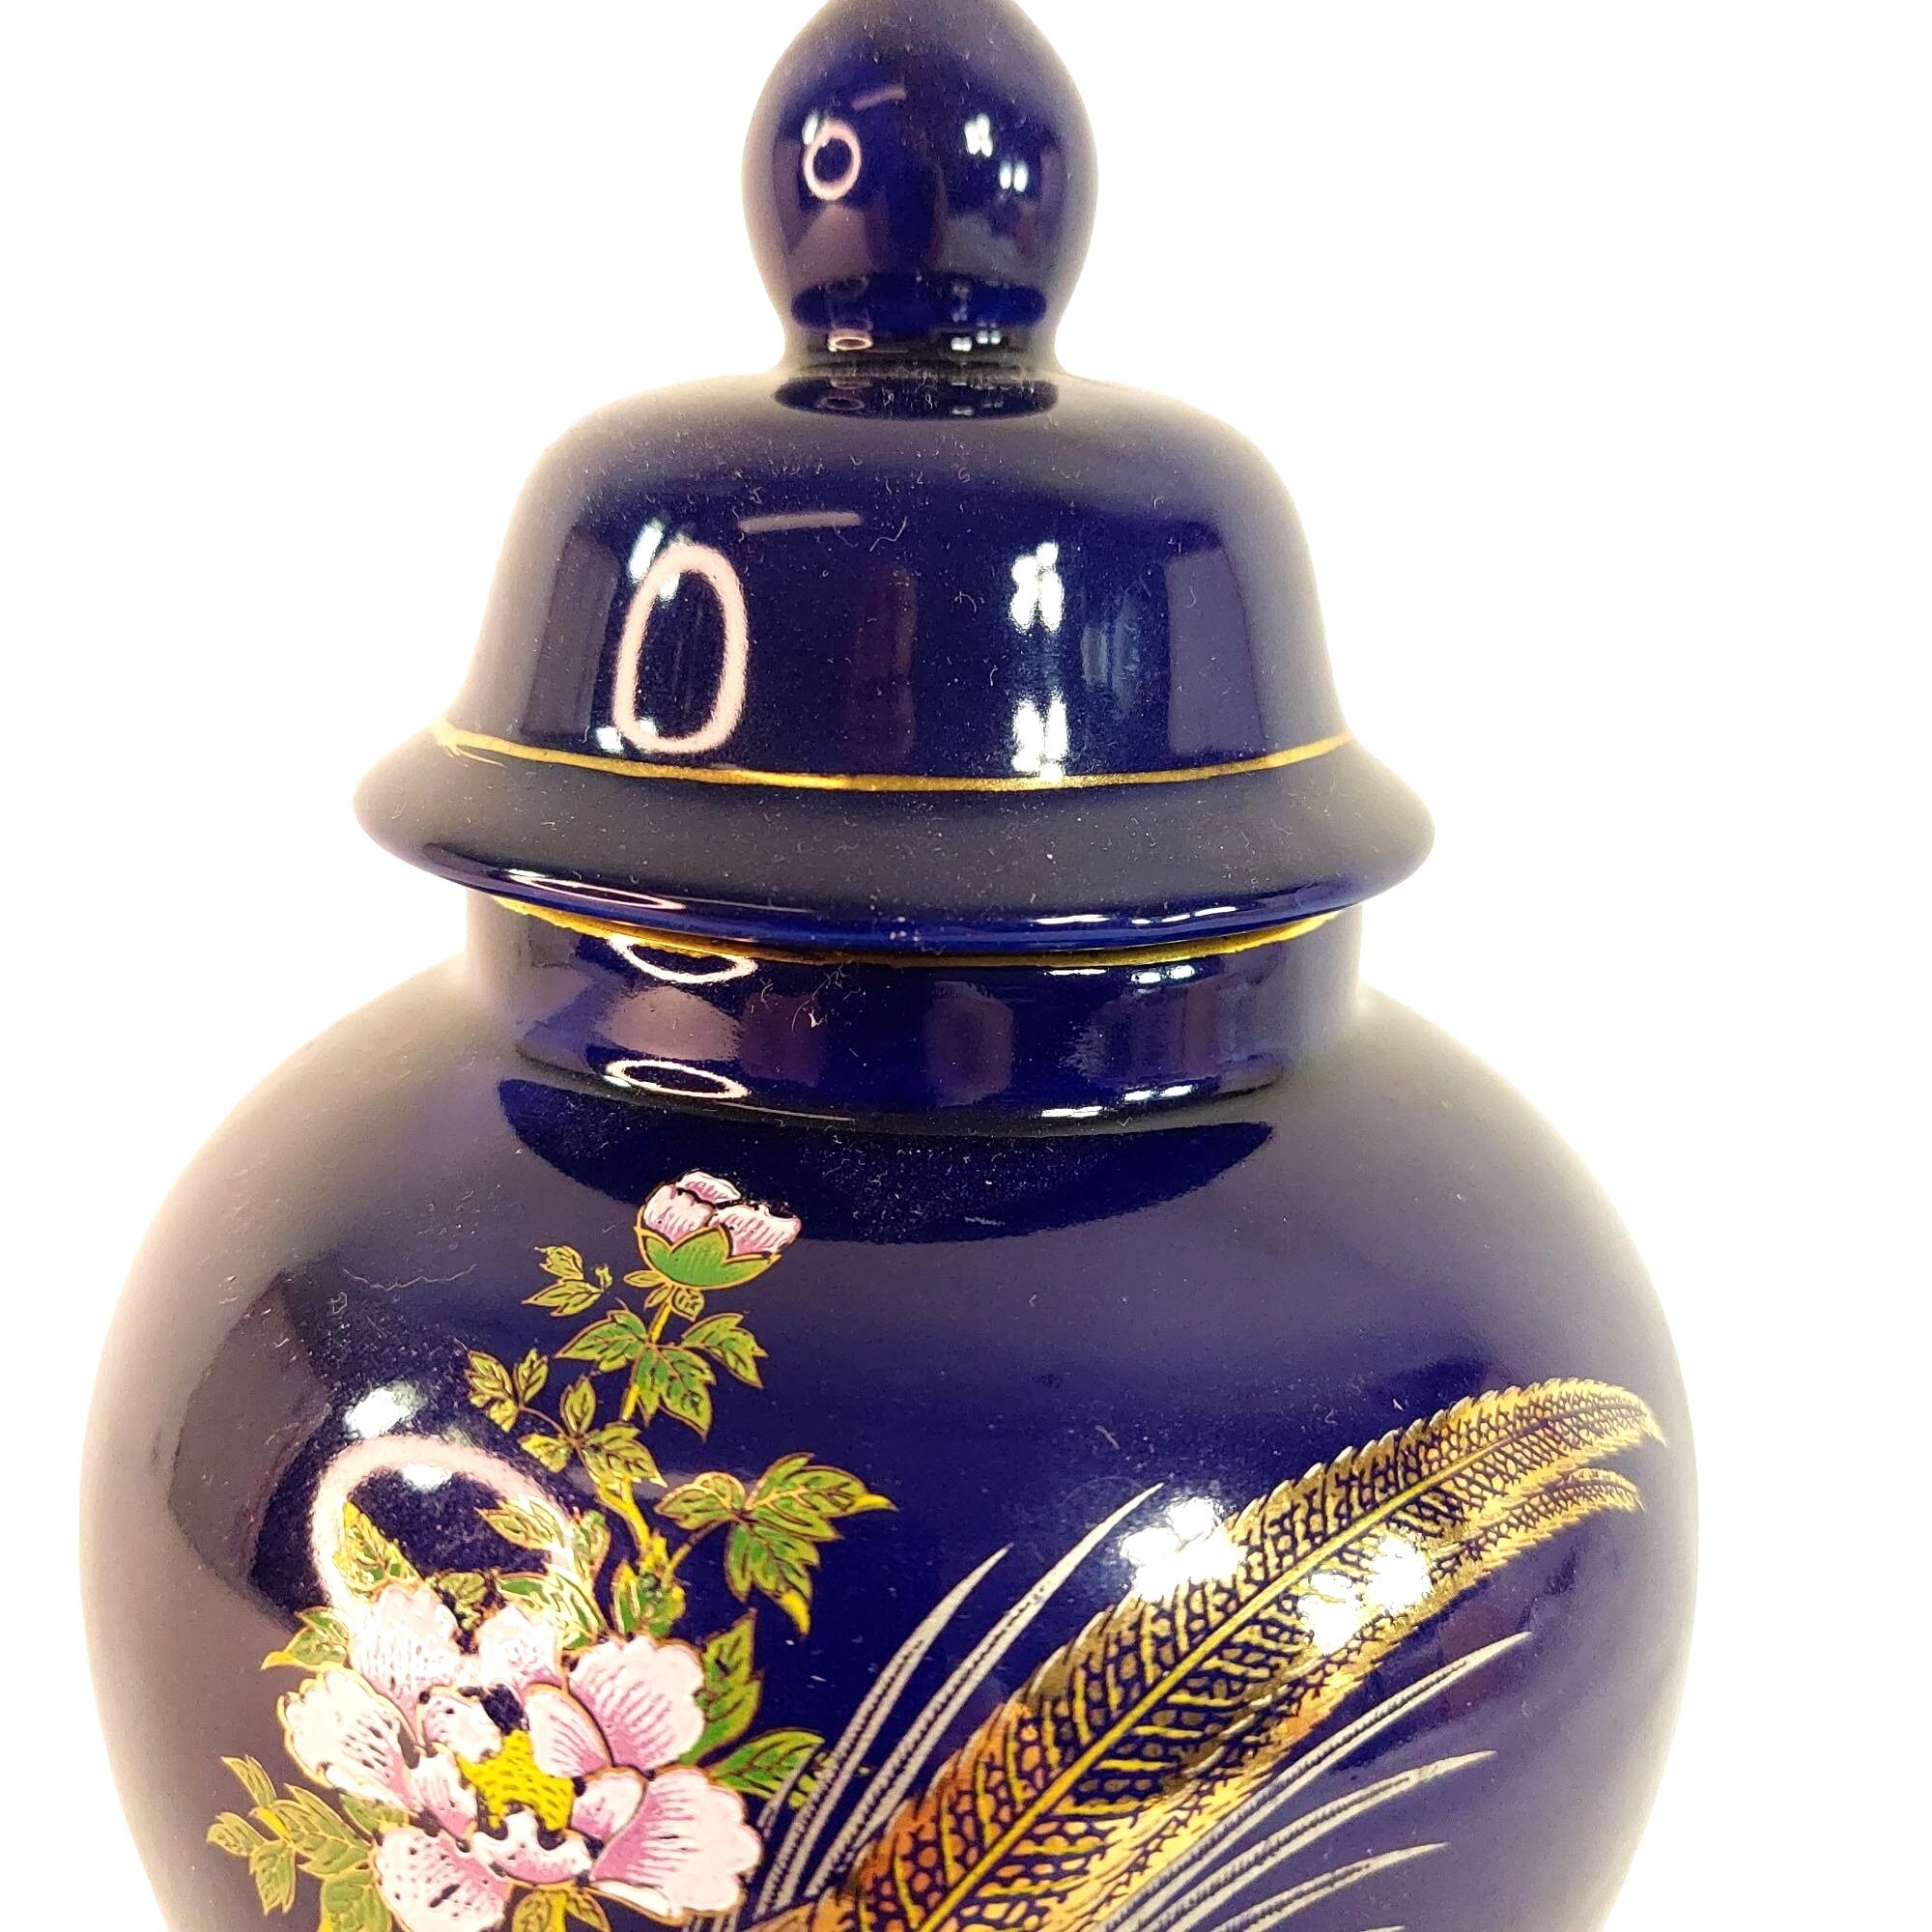 Jar Lidded Ginger Jar Asian-Inspired Pheasant Florals Vintage Home Decor 8.5"